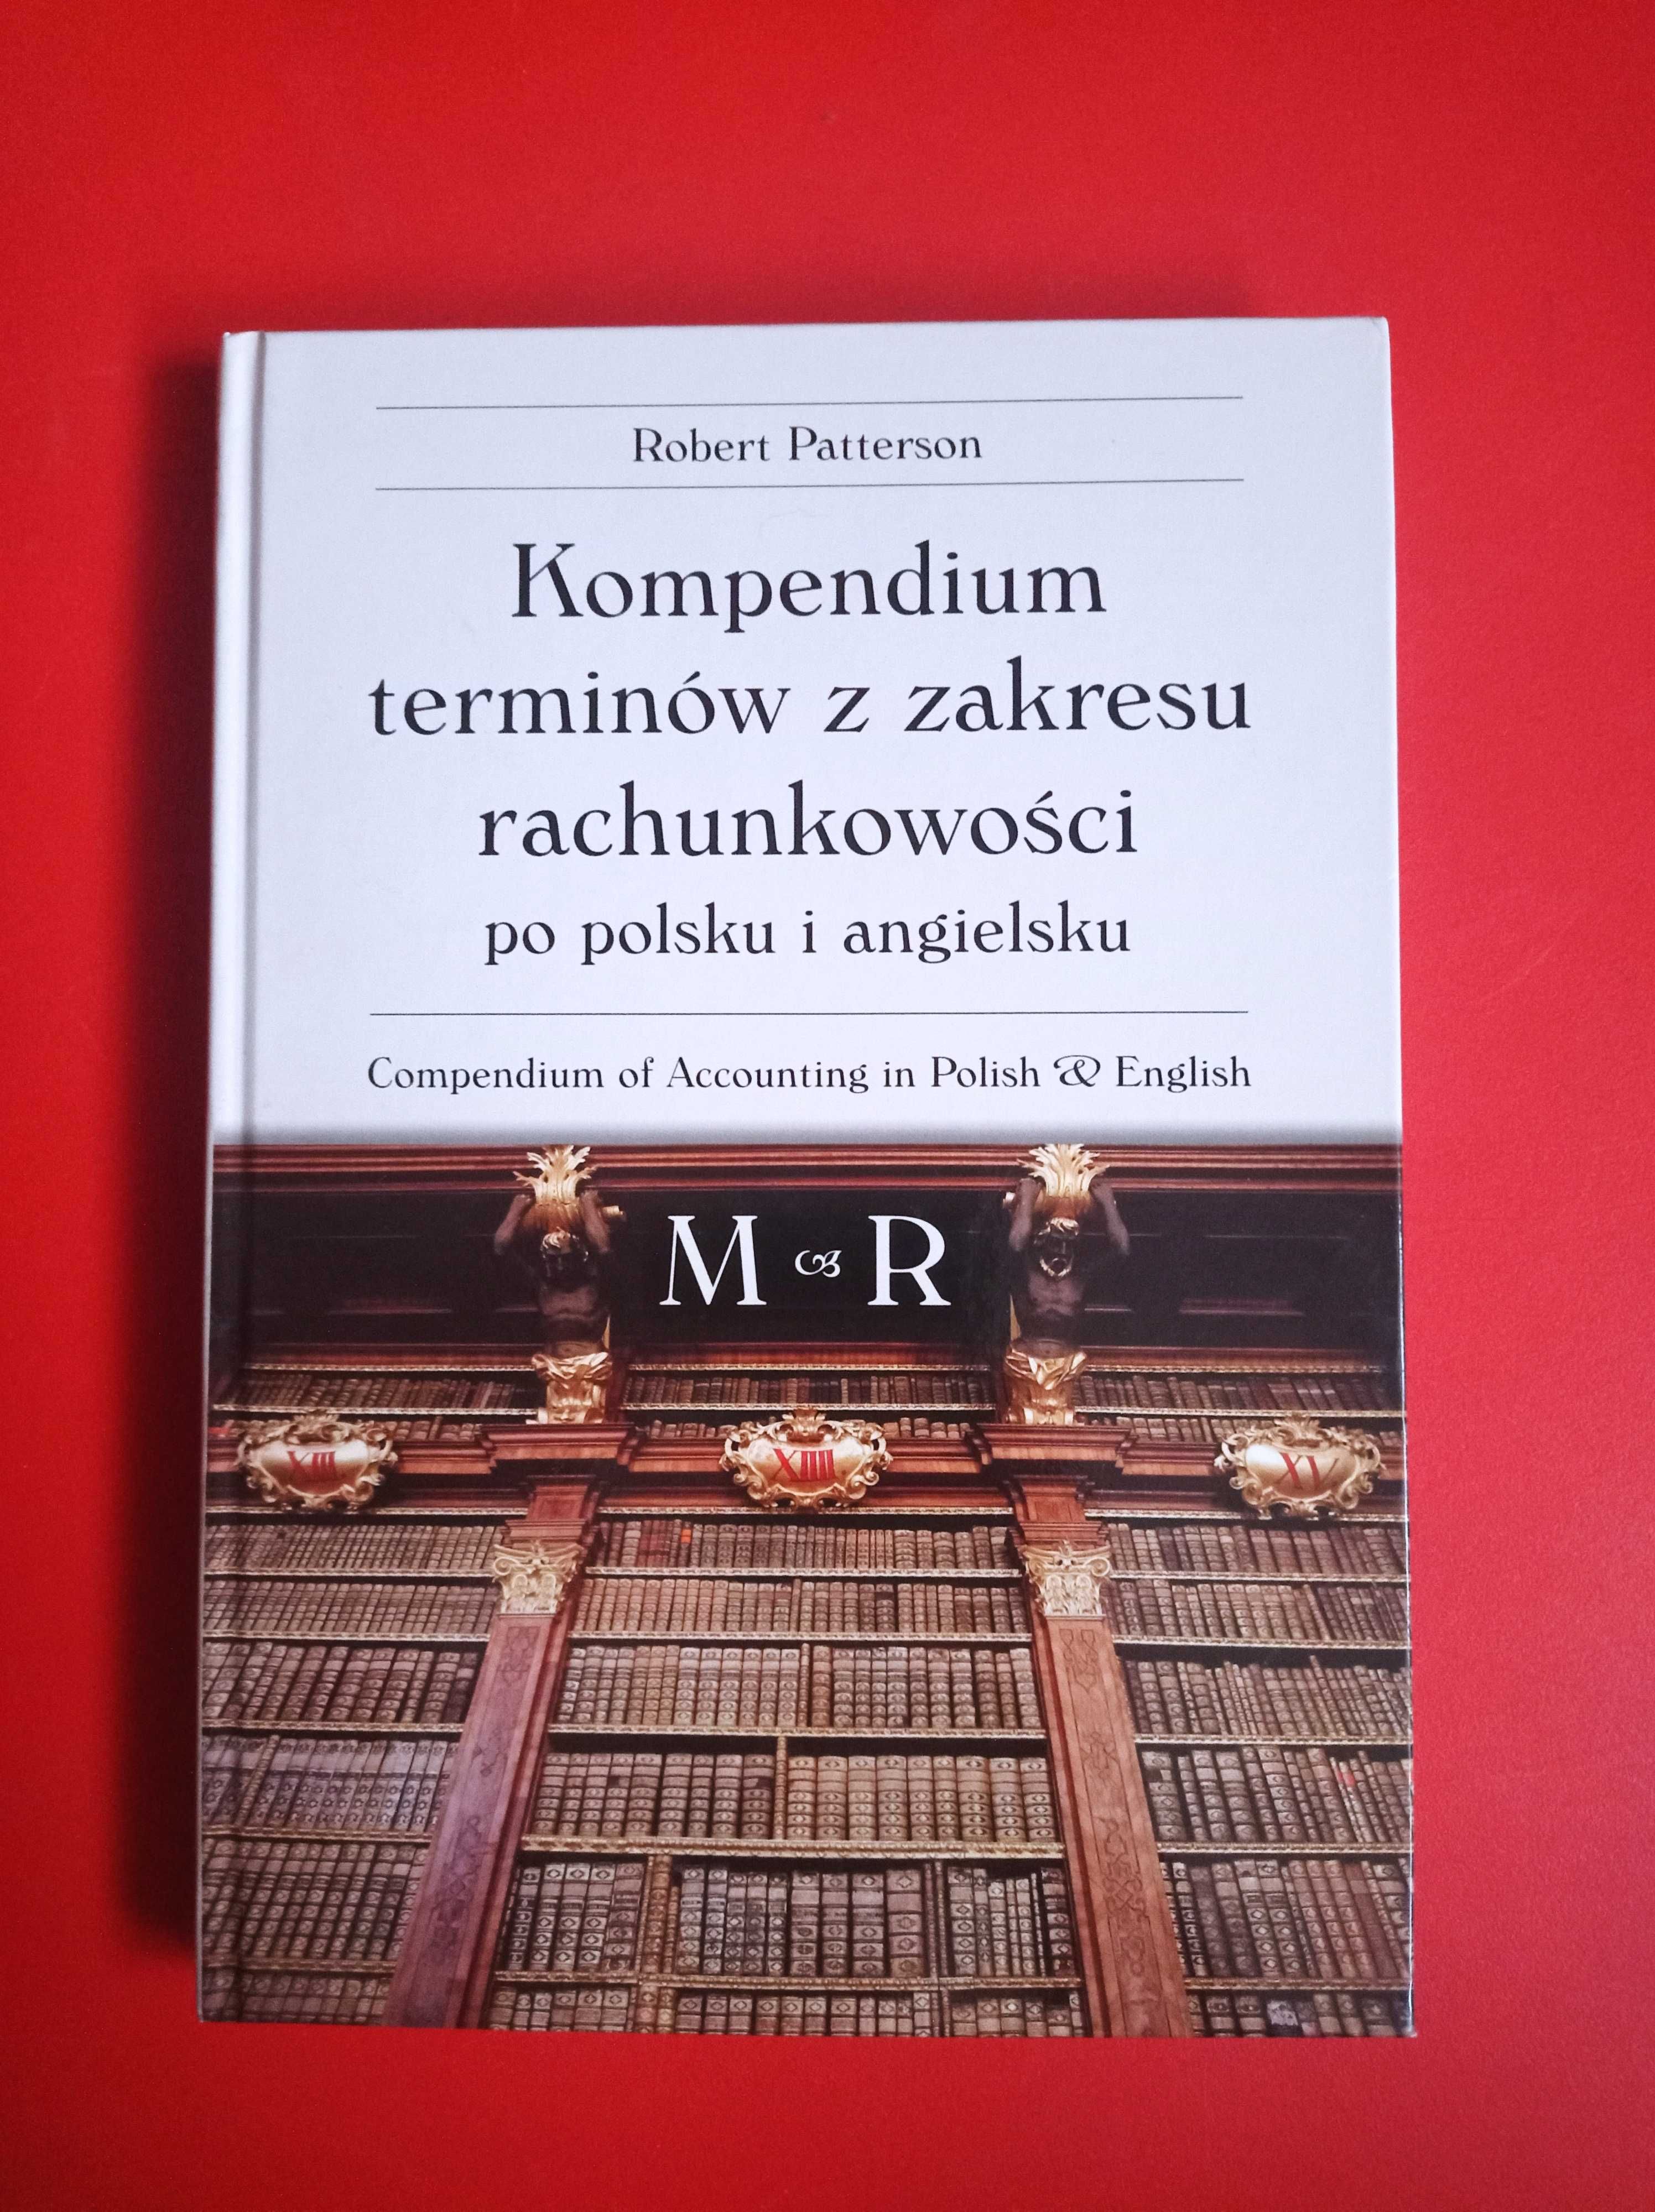 Kompendium terminów z zakresu rachunkowości, tom 2 M~R, Petterson